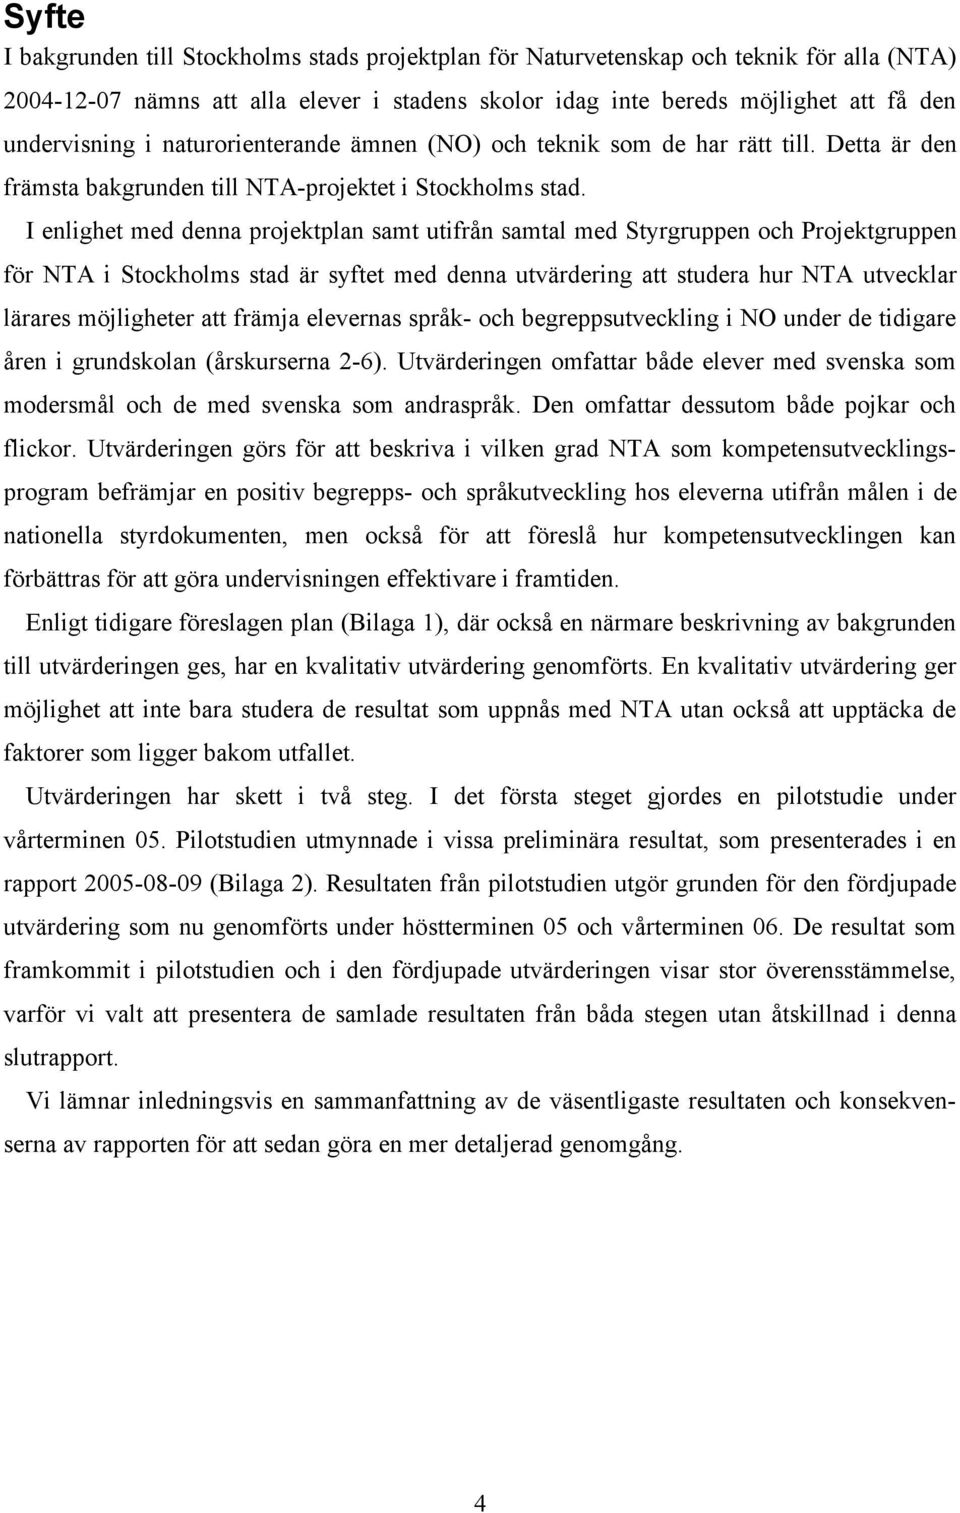 I enlighet med denna projektplan samt utifrån samtal med Styrgruppen och Projektgruppen för NTA i Stockholms stad är syftet med denna utvärdering att studera hur NTA utvecklar lärares möjligheter att